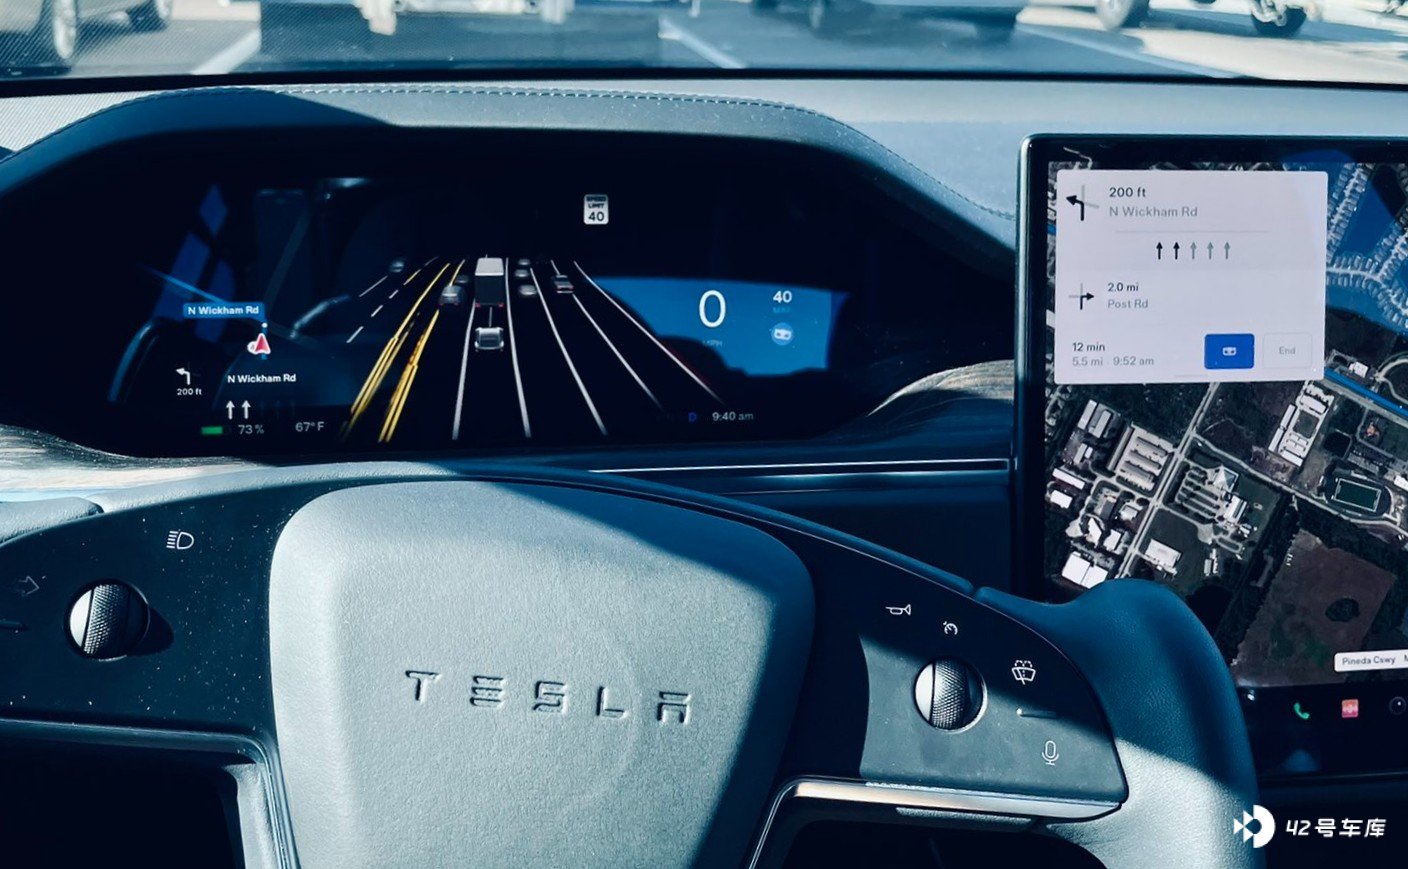 Elon Musk：明年特斯拉可以在某些地区实现完全的自动驾驶 - 42 号车库